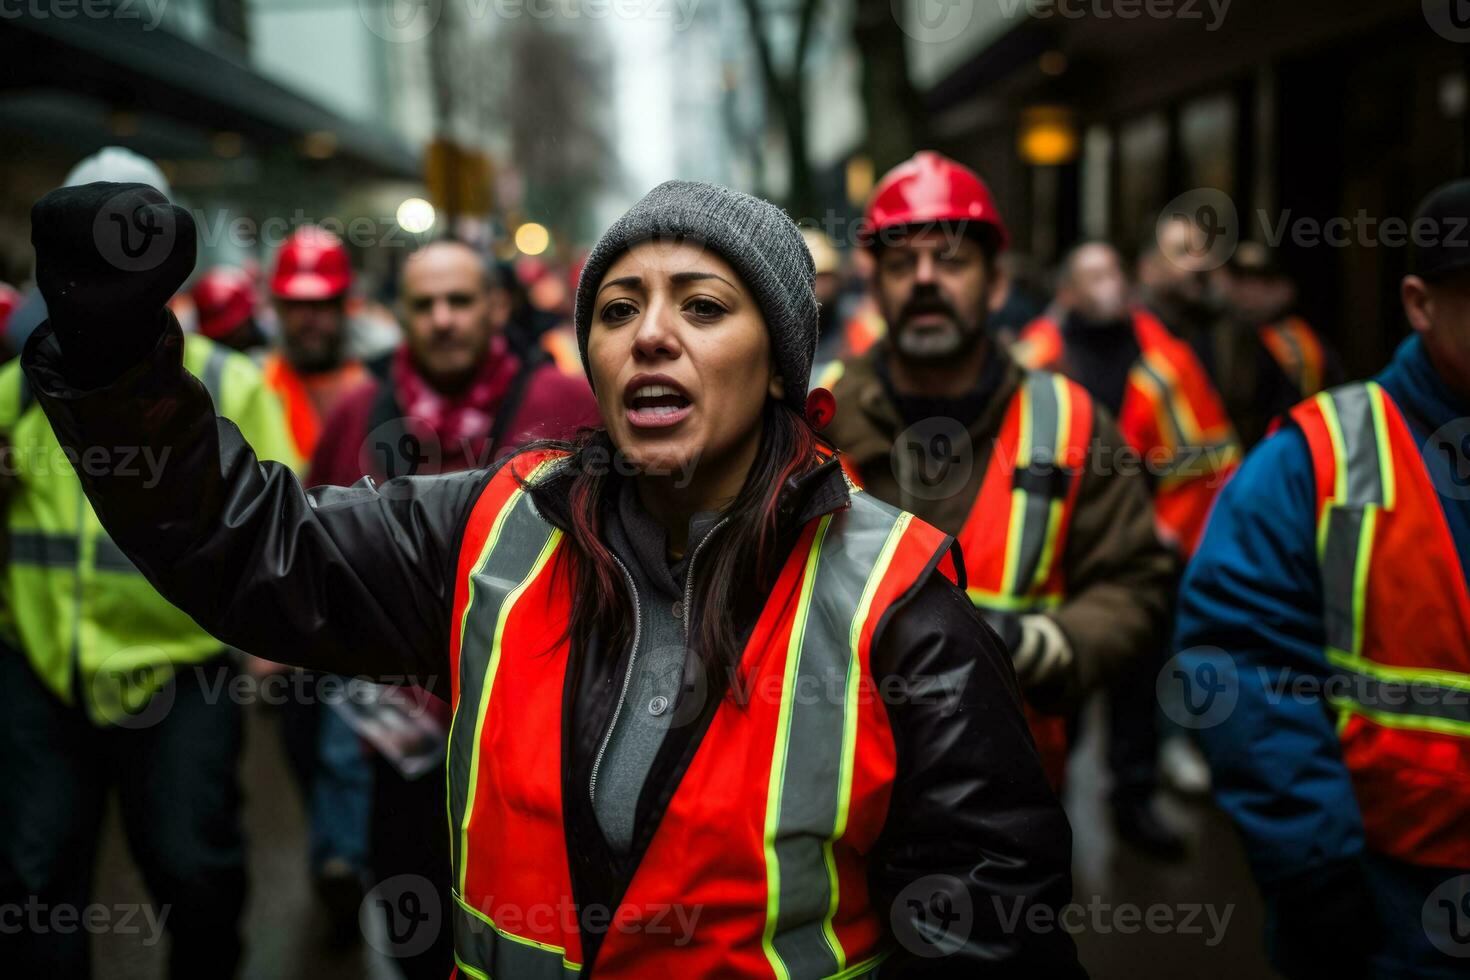 slående arbetare Mars i solidaritet deras bestämning synlig i deras beslutsam uttryck foto